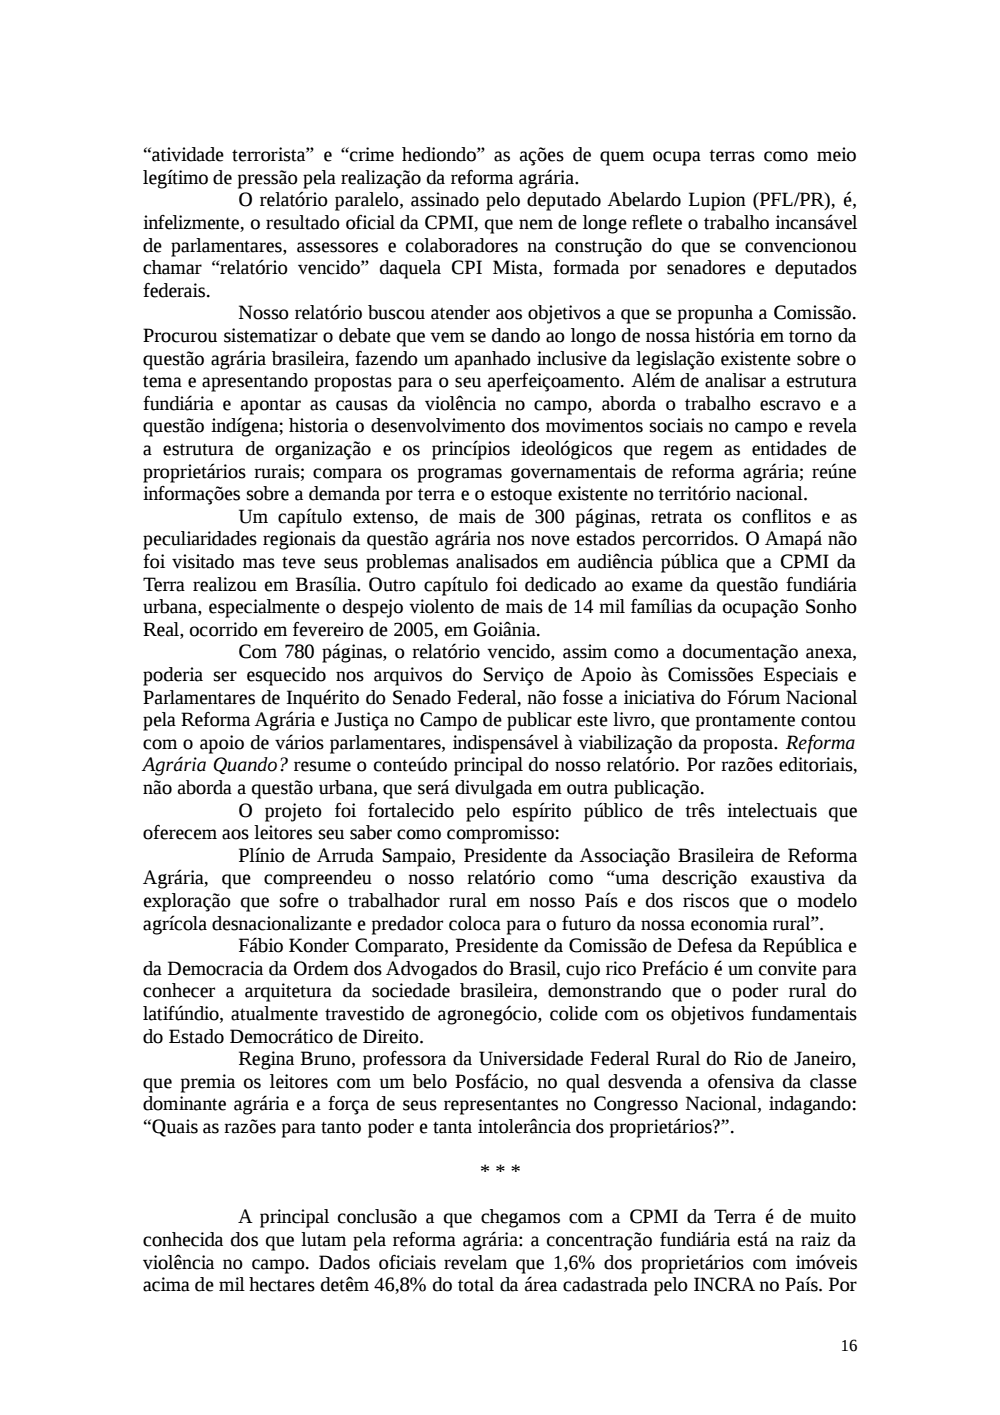 Page 16 from Relatório final da comissão